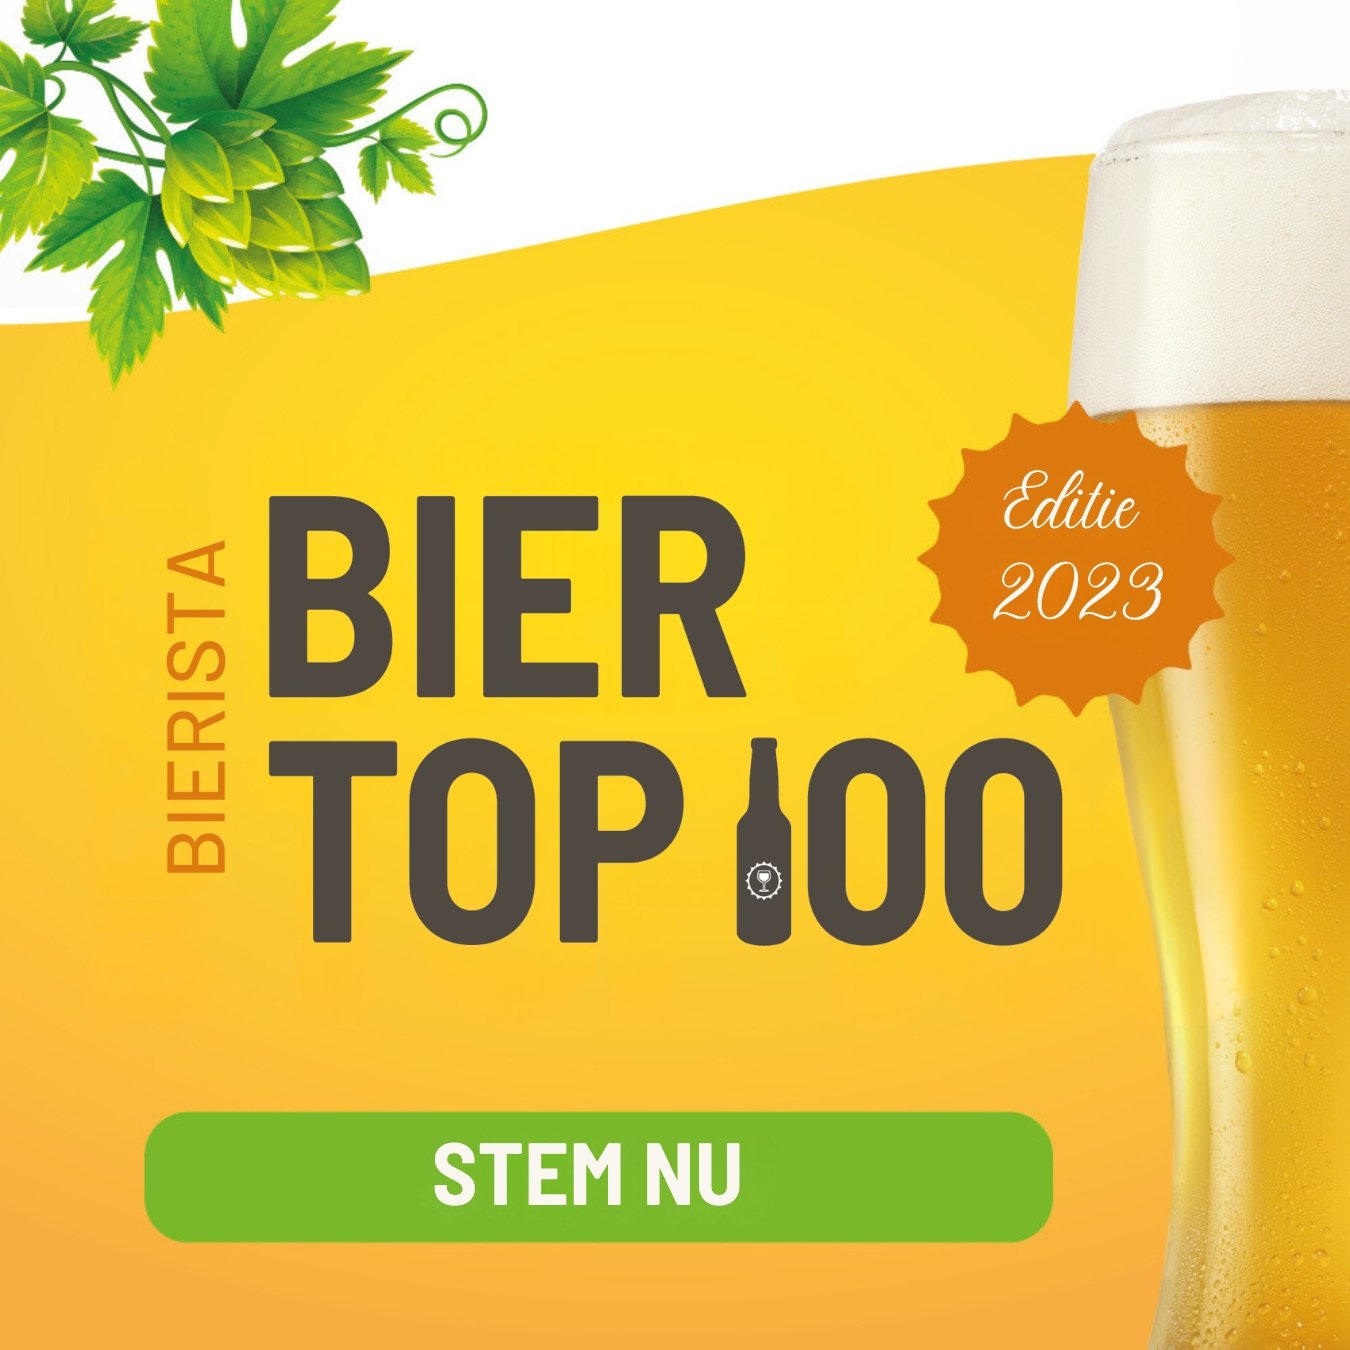 Bierista Bier Top 100 - social